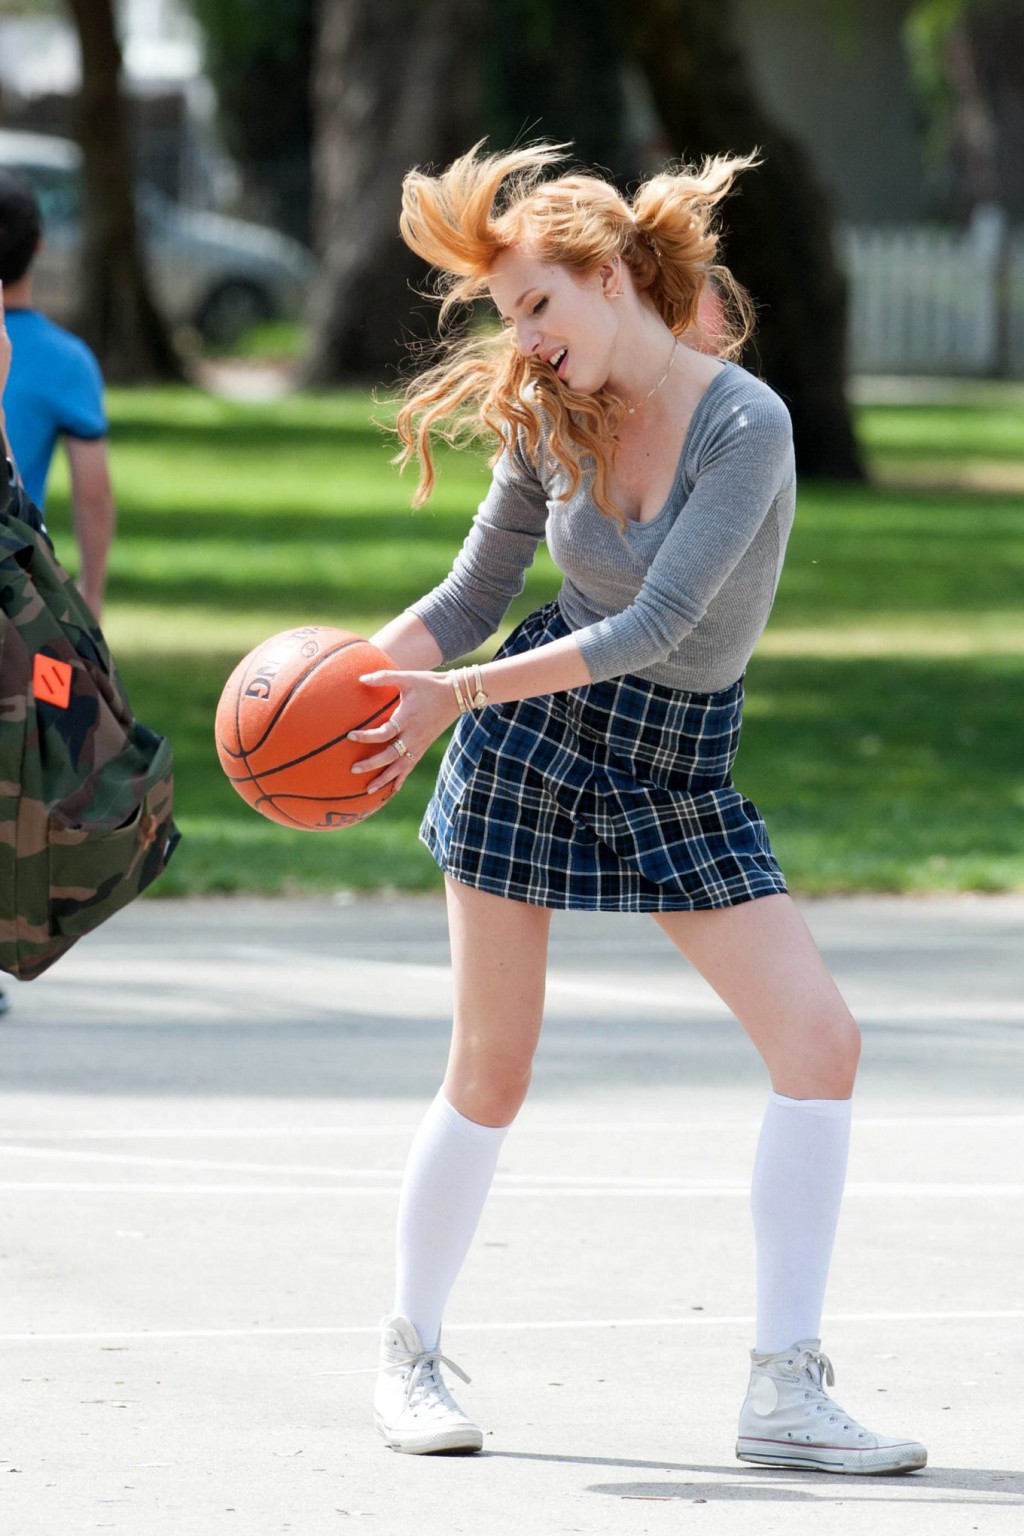 ベラ・ソーン、「Most ghos」の撮影で女子高生姿でバスケをする
 #75200795